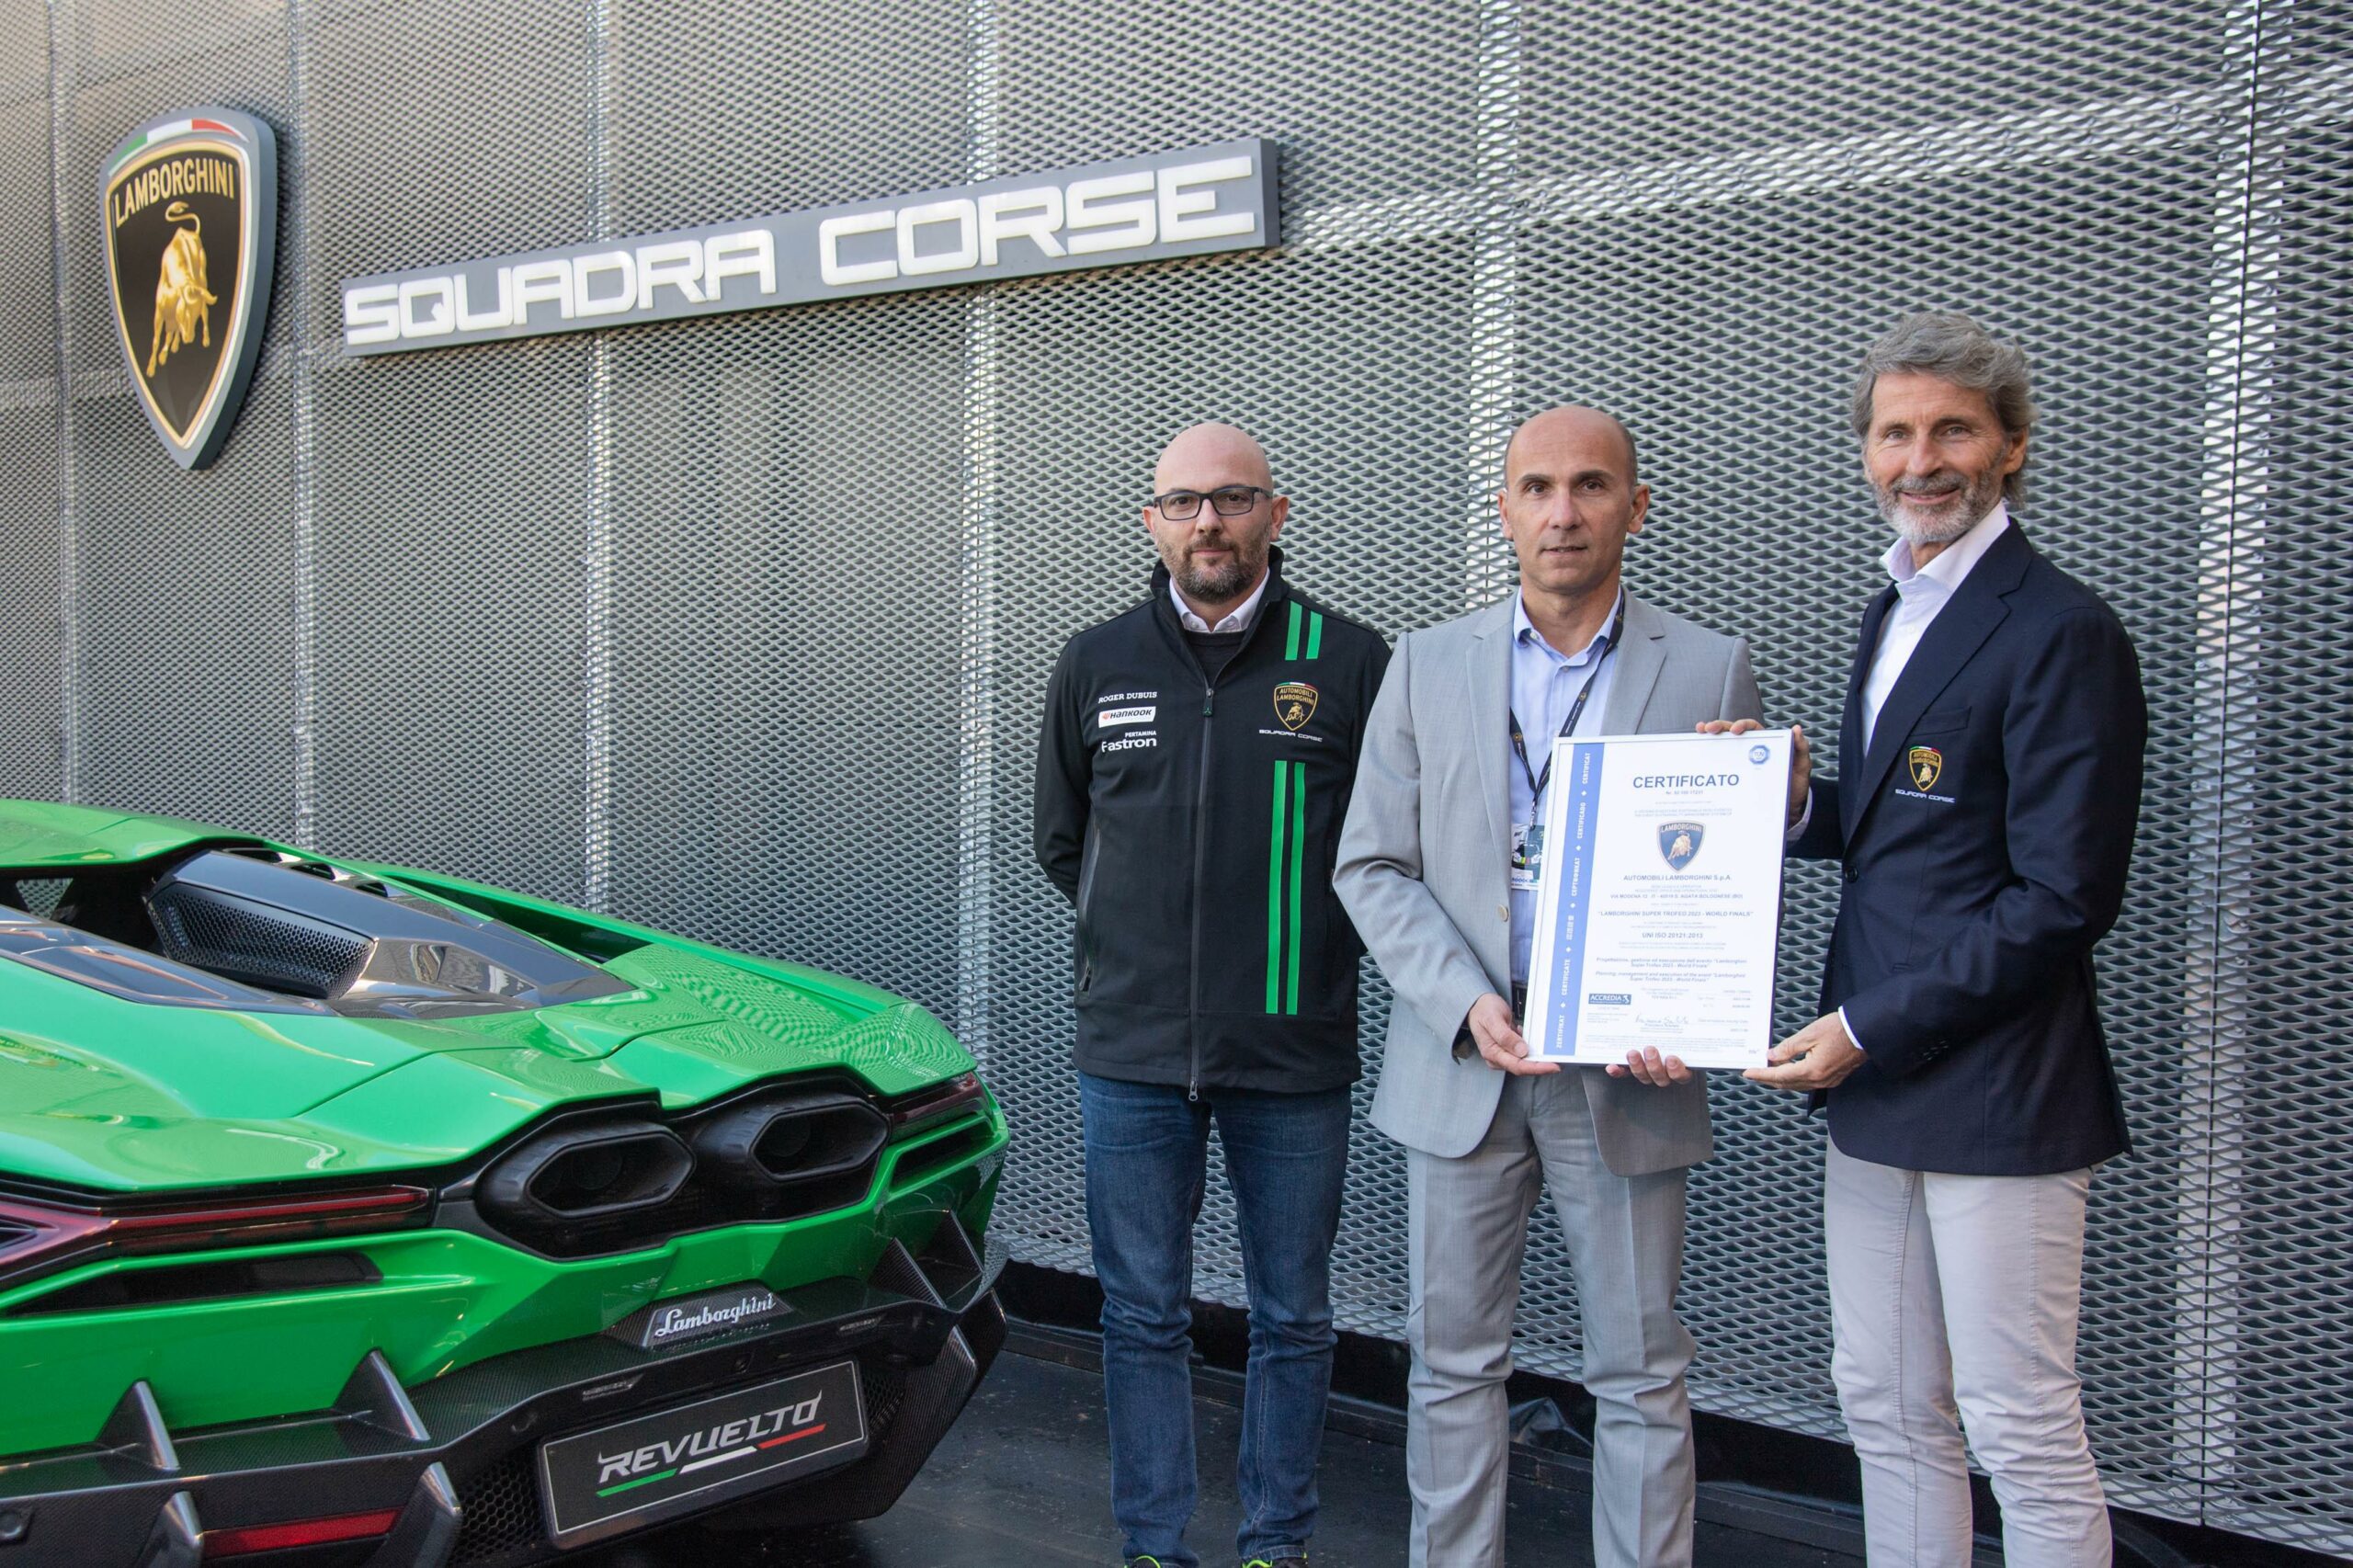 Le World Finals Lamborghini 2023 ottengono la certificazione per la gestione sostenibile degli eventi ISO 20121